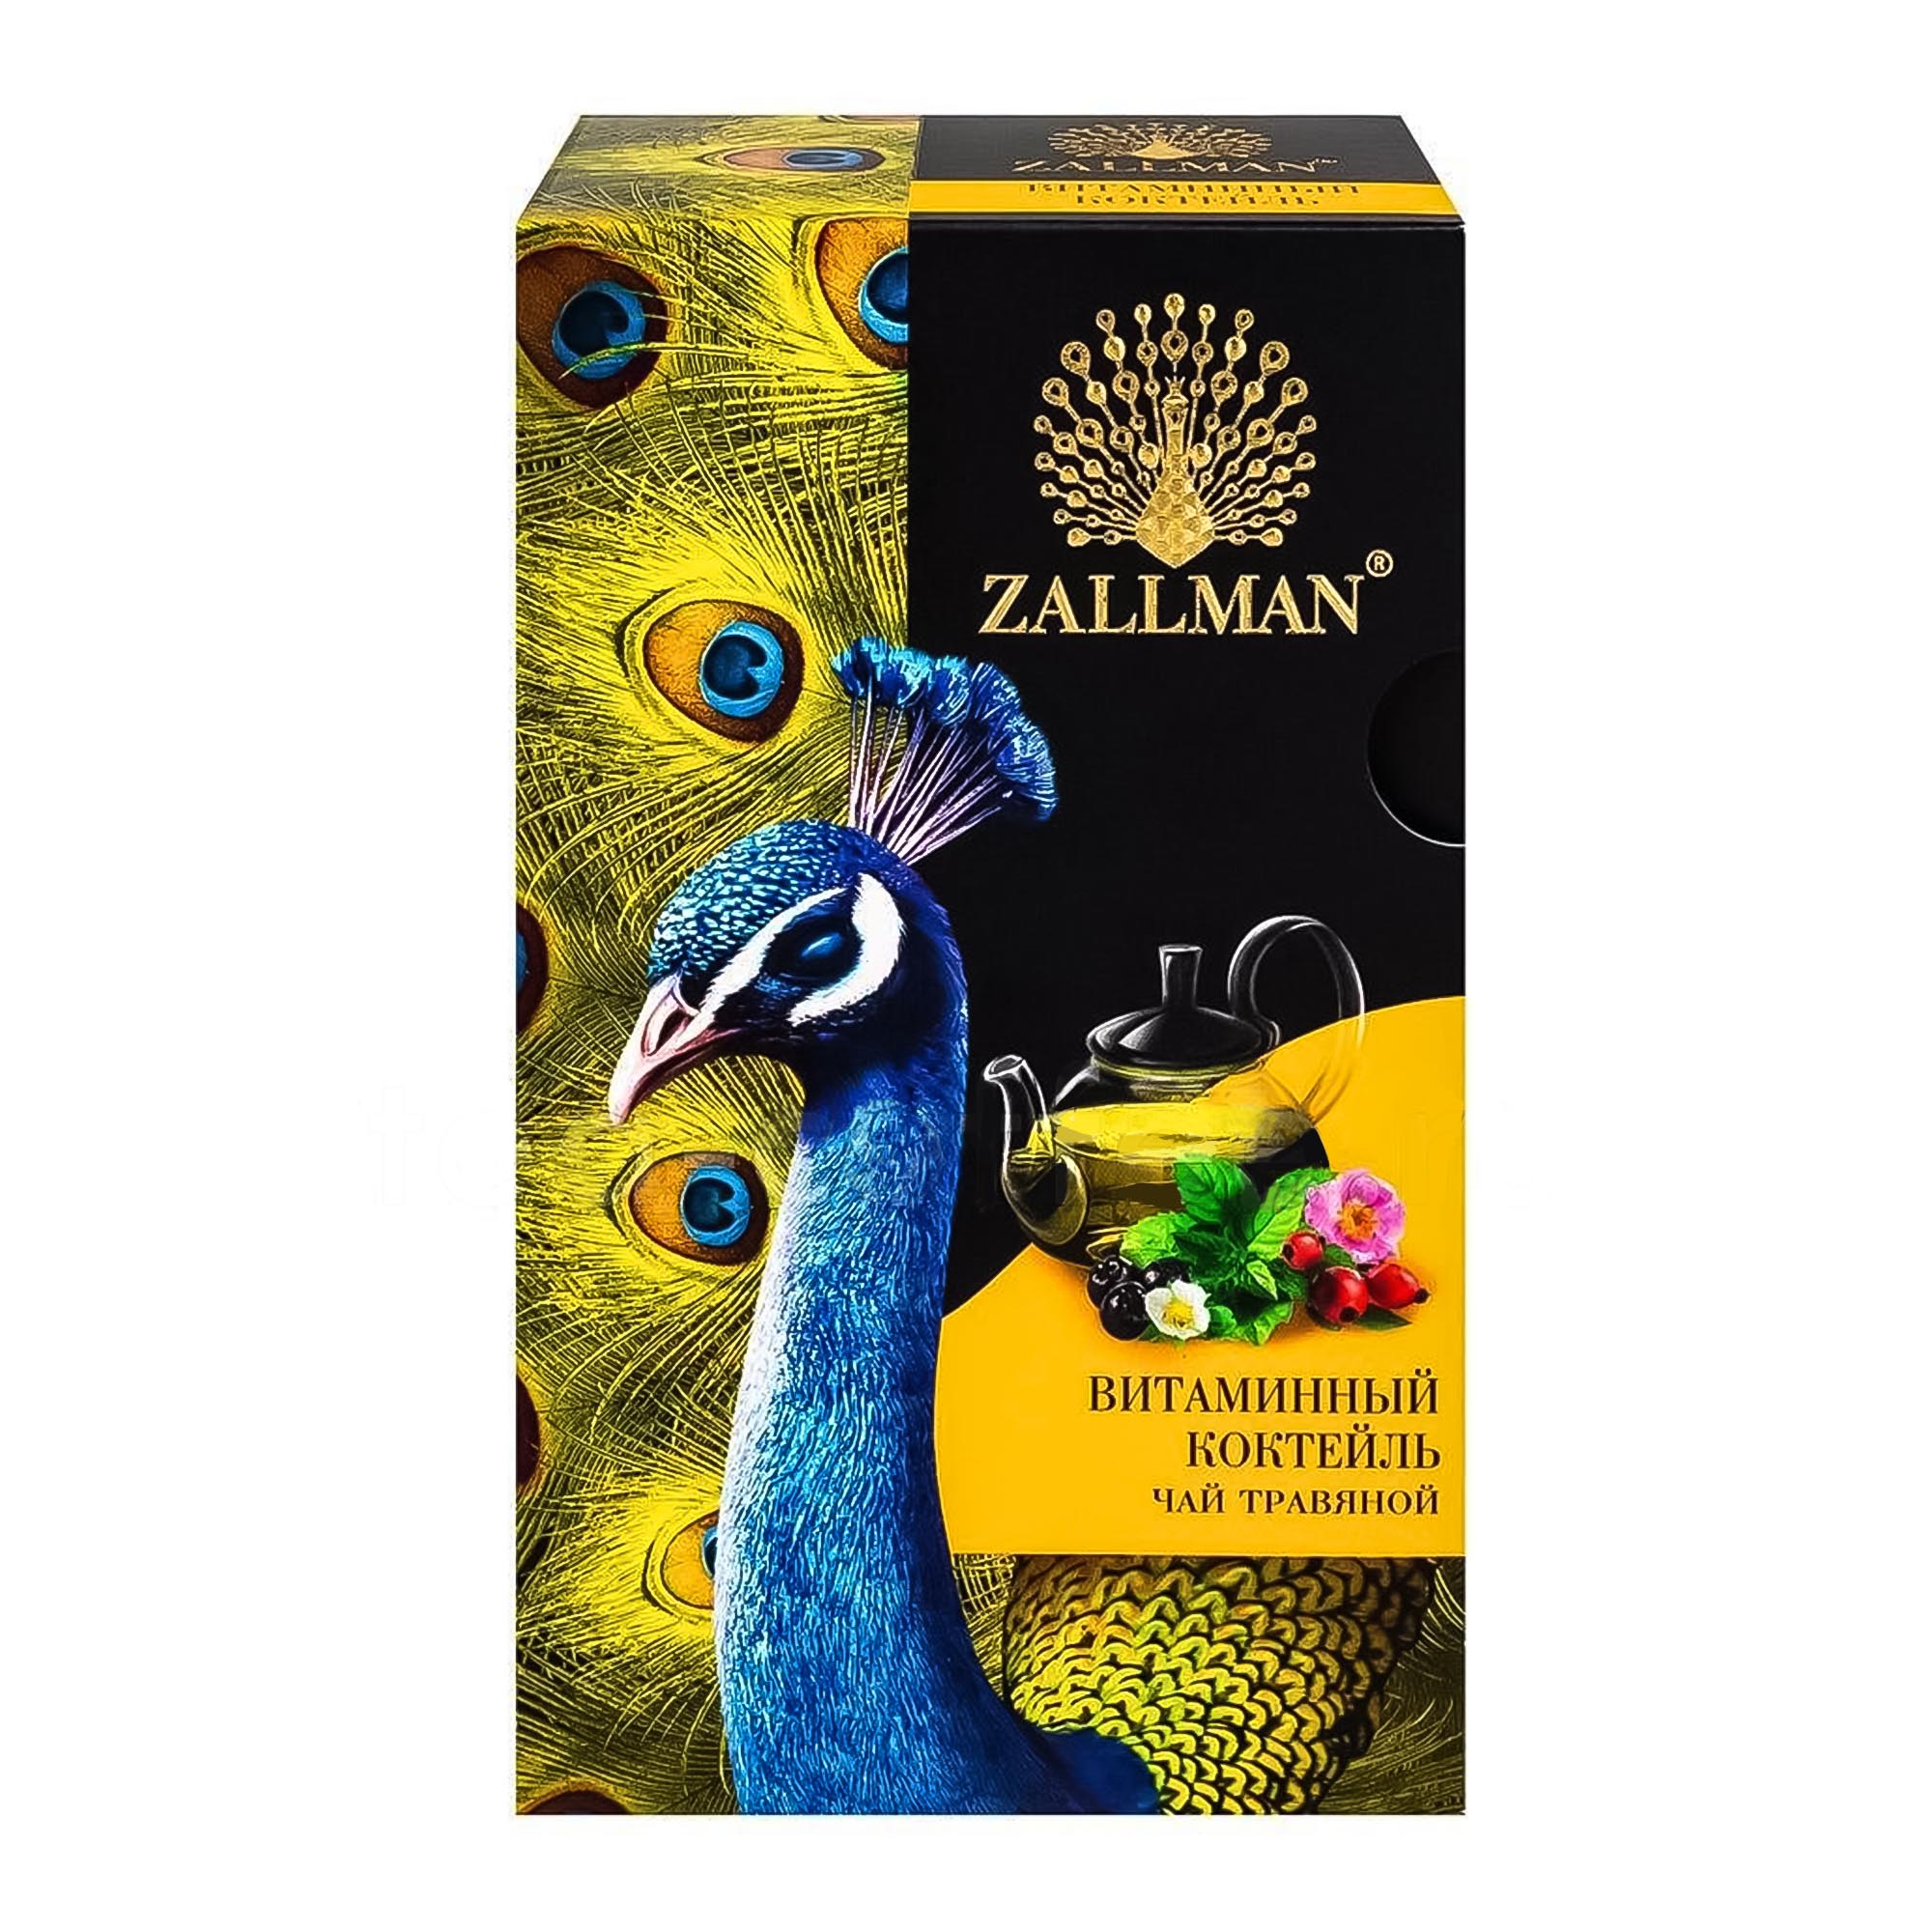 Чай травяной прессованный для чайника Zallman 50 г чай травяной крымская здравница 50 г